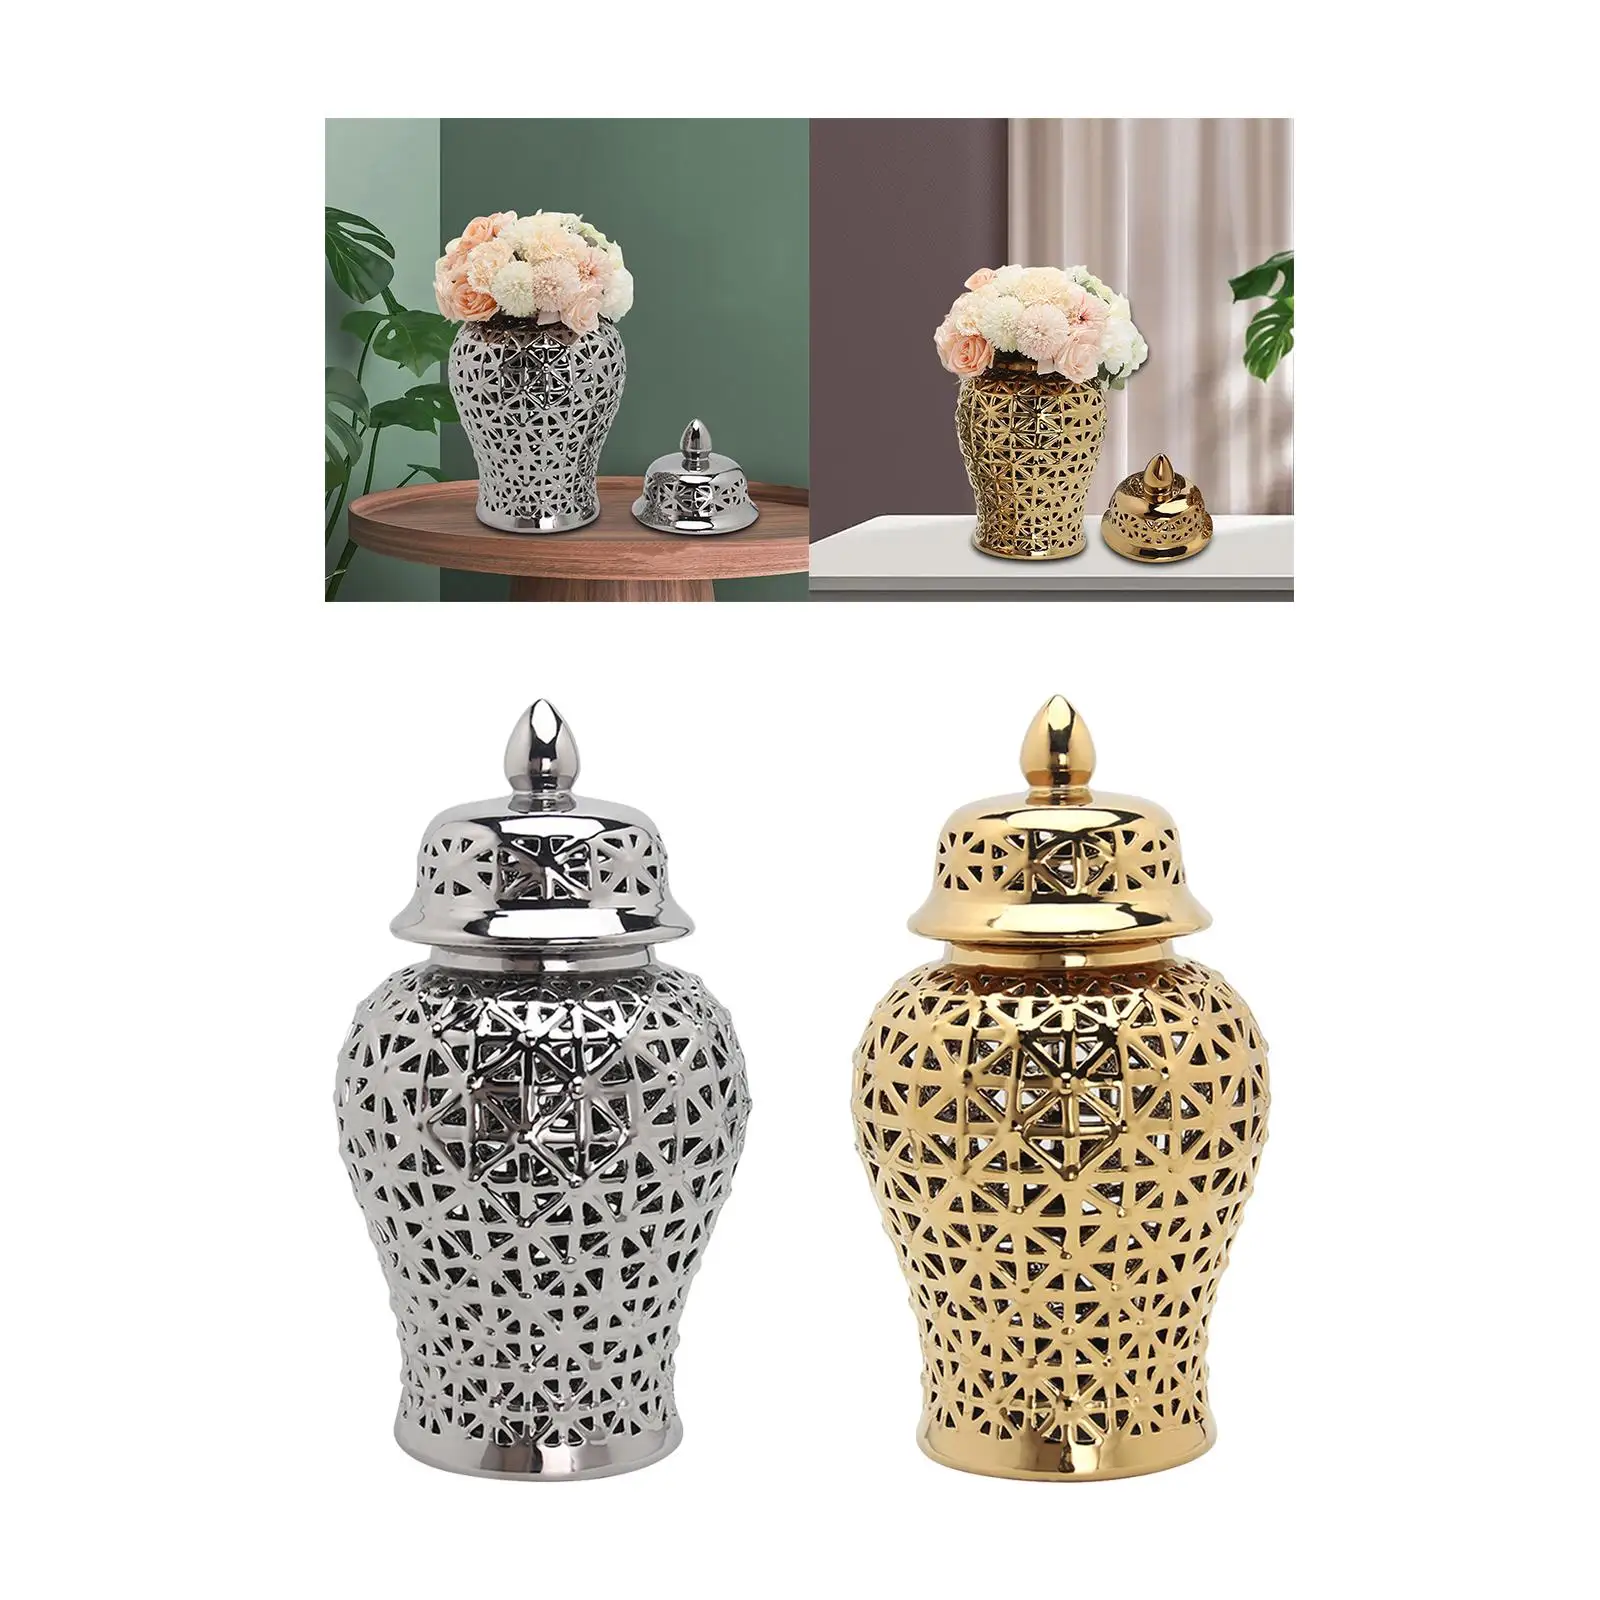 Glossy Ceramic Ginger Jar, Decorative Porcelain Jar, Floral Arrangement Pot,